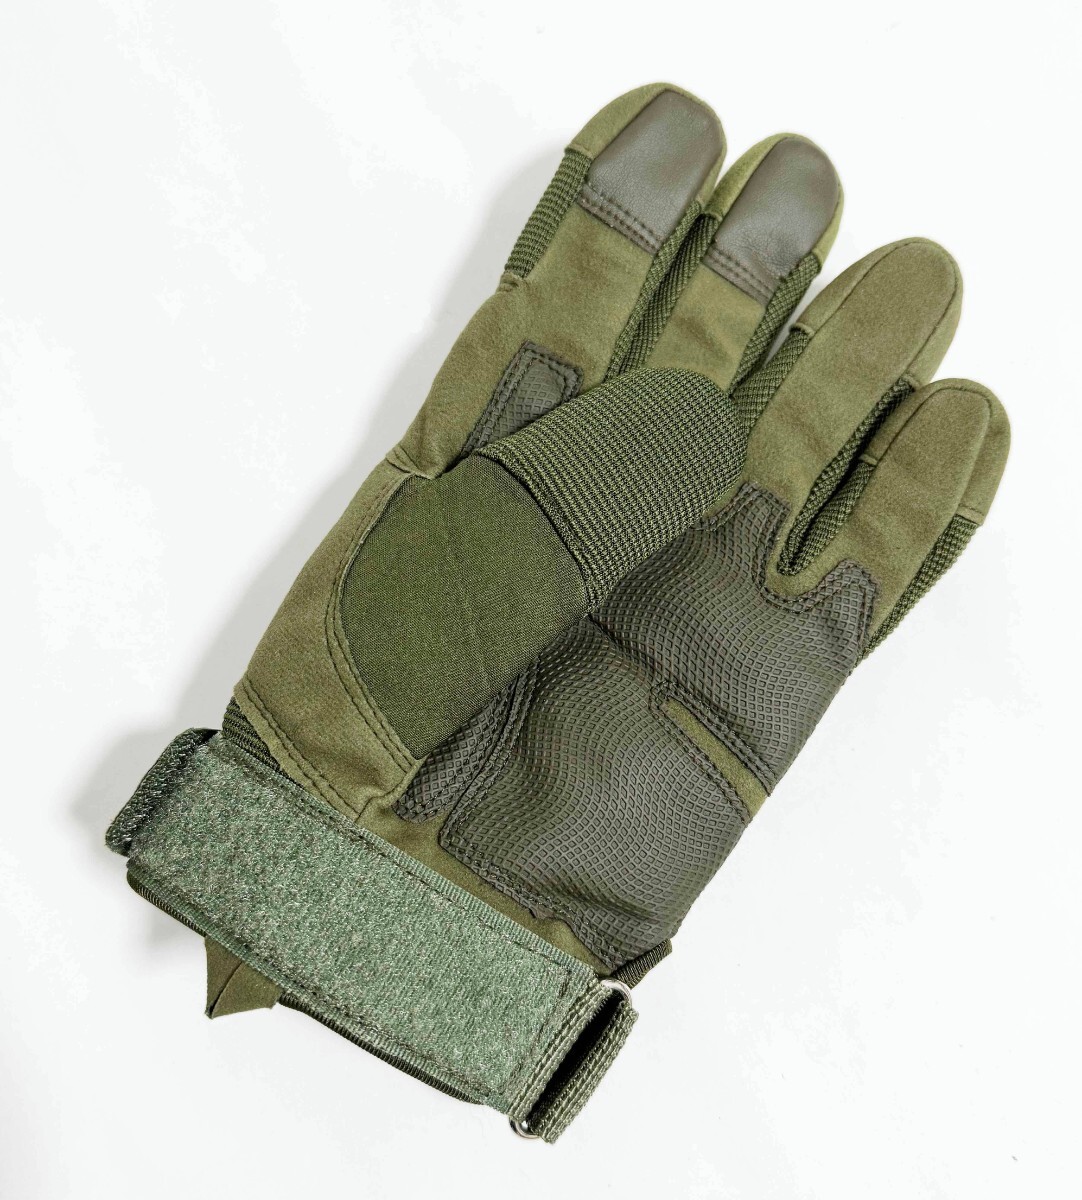 【Yes.Sir shop】 ロシア軍 グローブ 手袋 Mサイズ OD グリーン 最新版 新品未使用